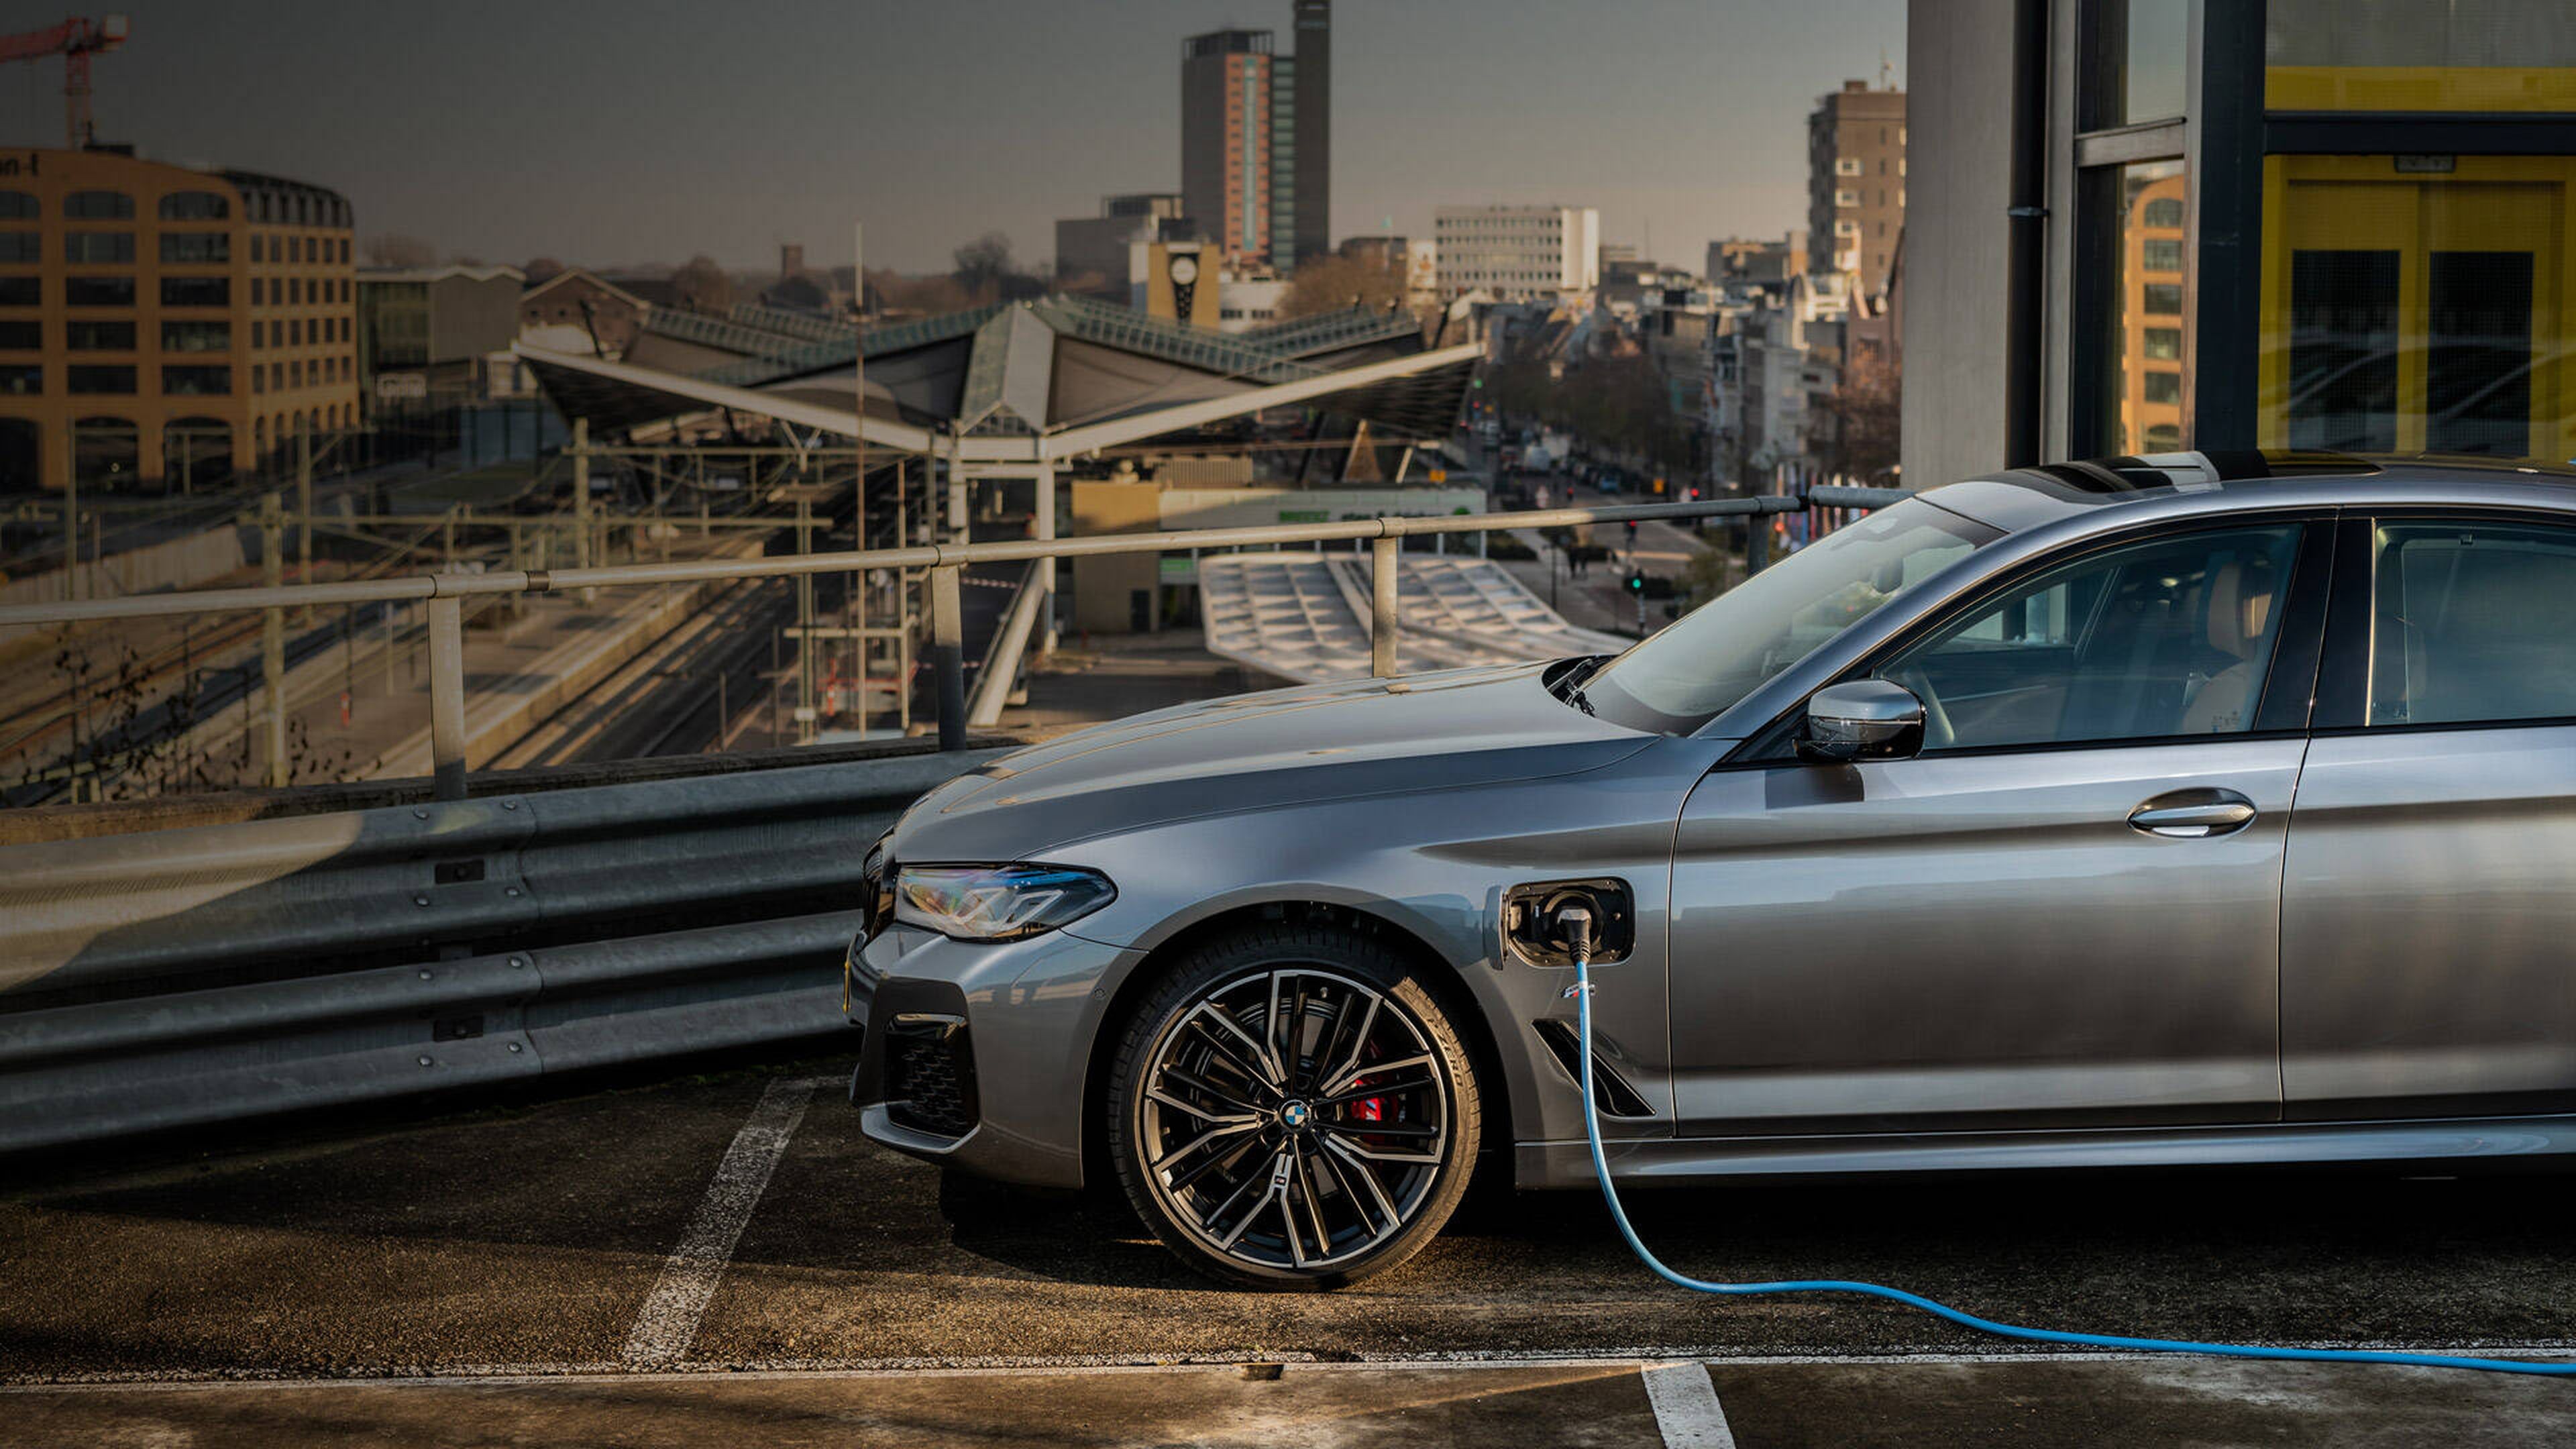 BMW marca de automoción más sostenible gracias a la electrificación